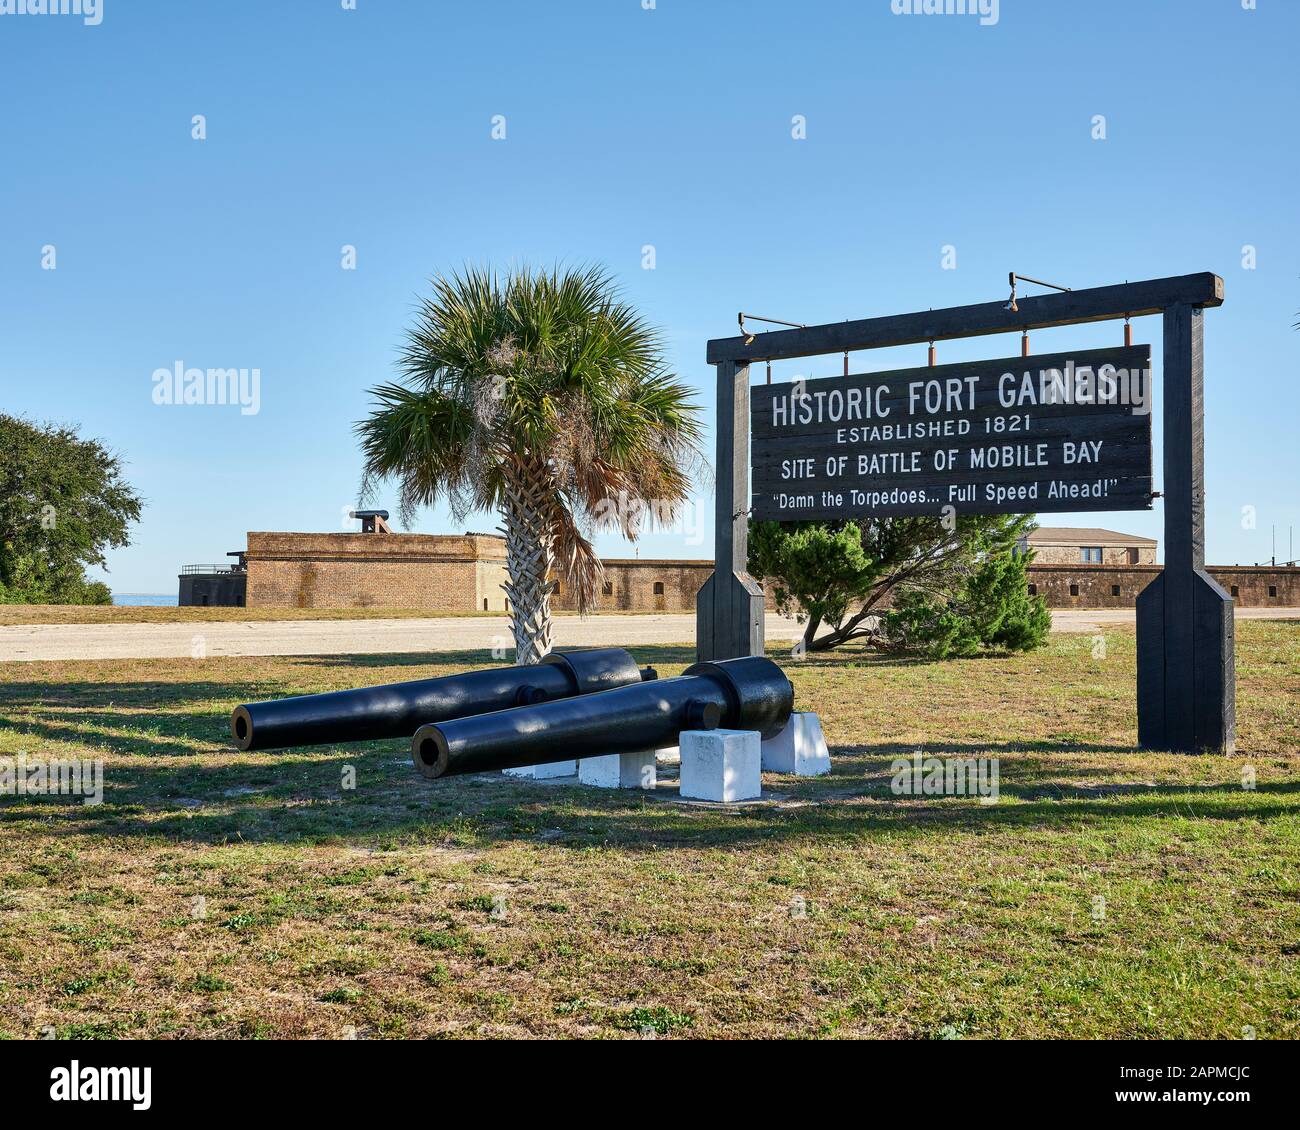 Señal de entrada al histórico Fort Gaines donde se libró la batalla de Mobile Bay, en Dauphin Island Alabama, EE.UU Foto de stock